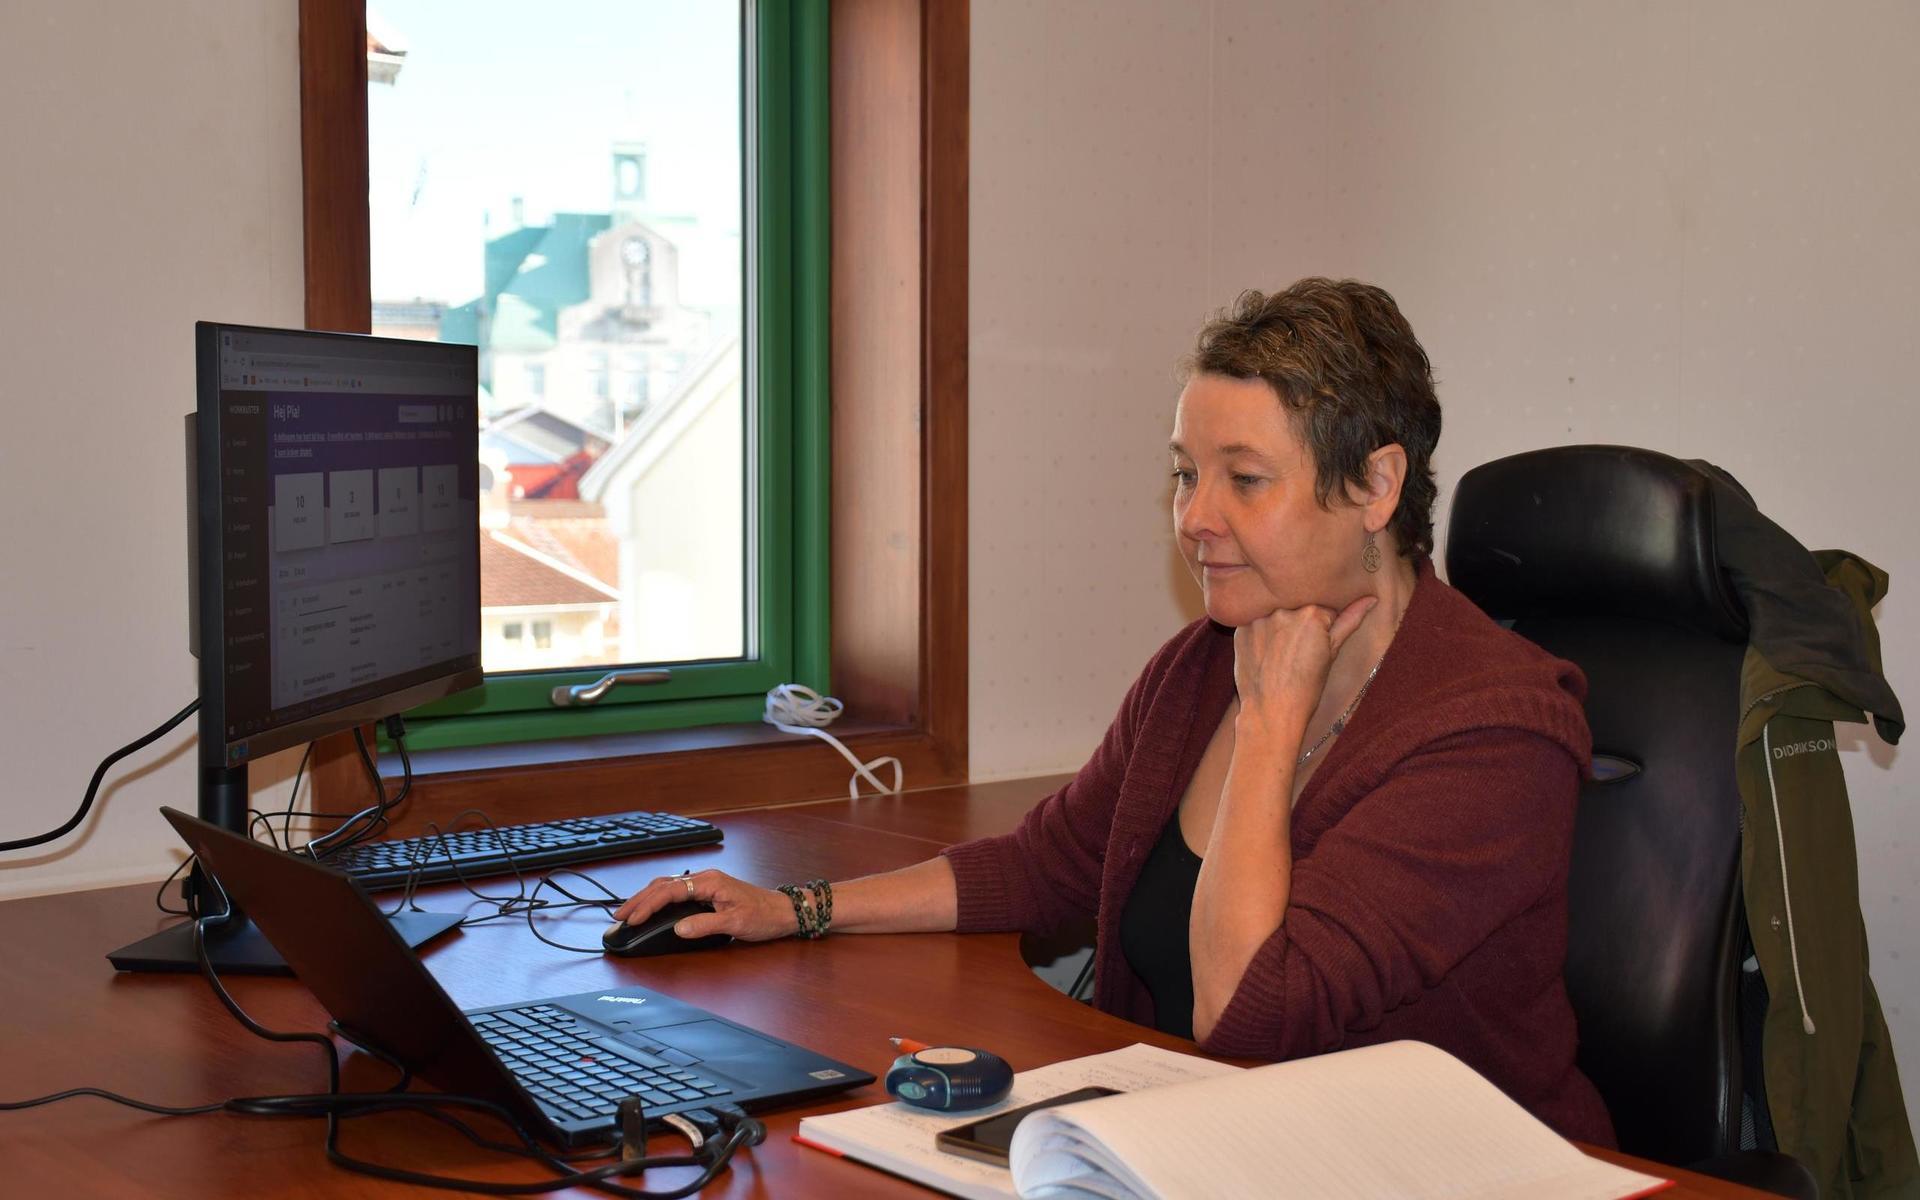 På kontoret i Strömstad har handledare Pia Gustavsson fått upp datorn på skrivbordet. Hon arbetar som handledare och coach. 